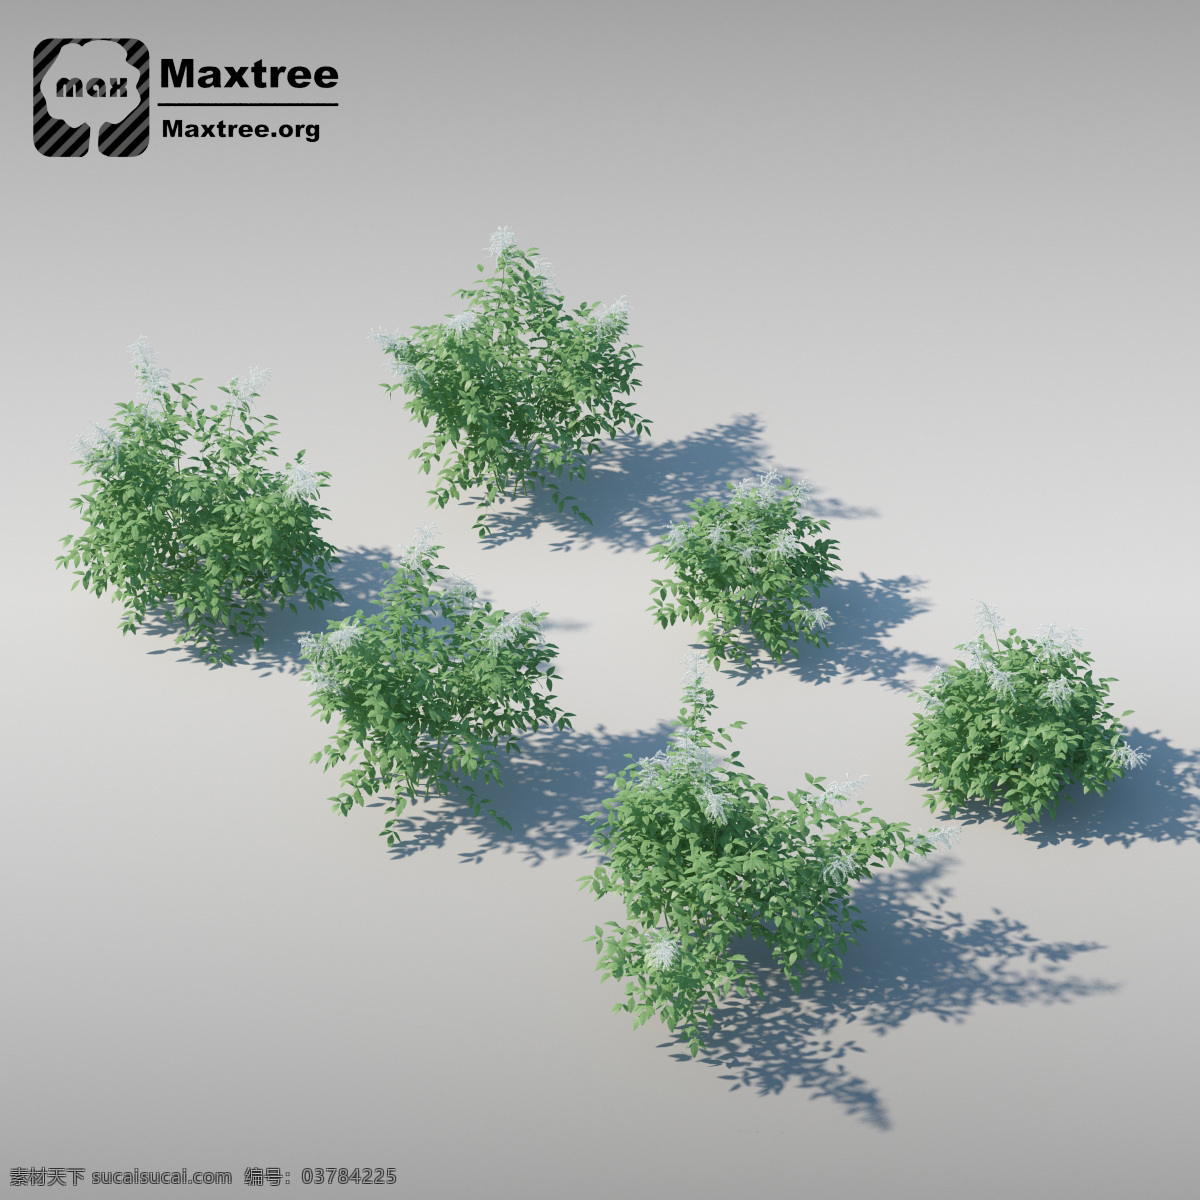 灌木 模型 效果图 模型素材 3d渲染 3d模型 灌木模型